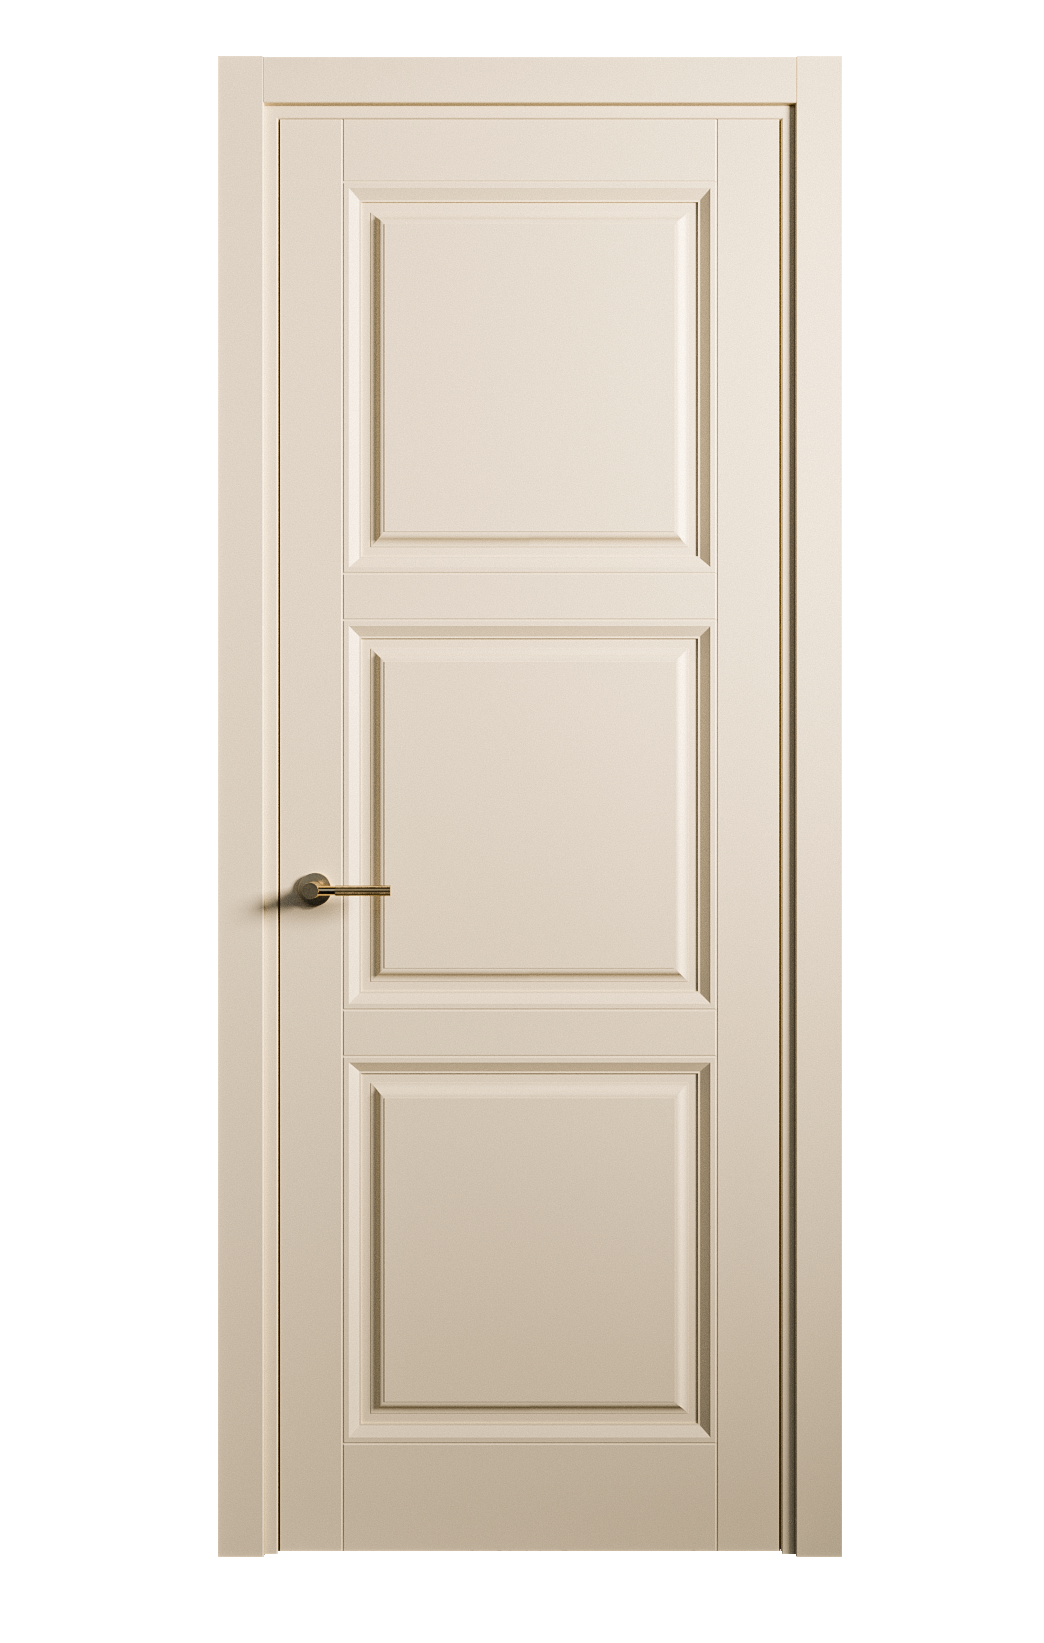 Межкомнатная дверь Venezia-3 глухая эмаль ral 1015 25750